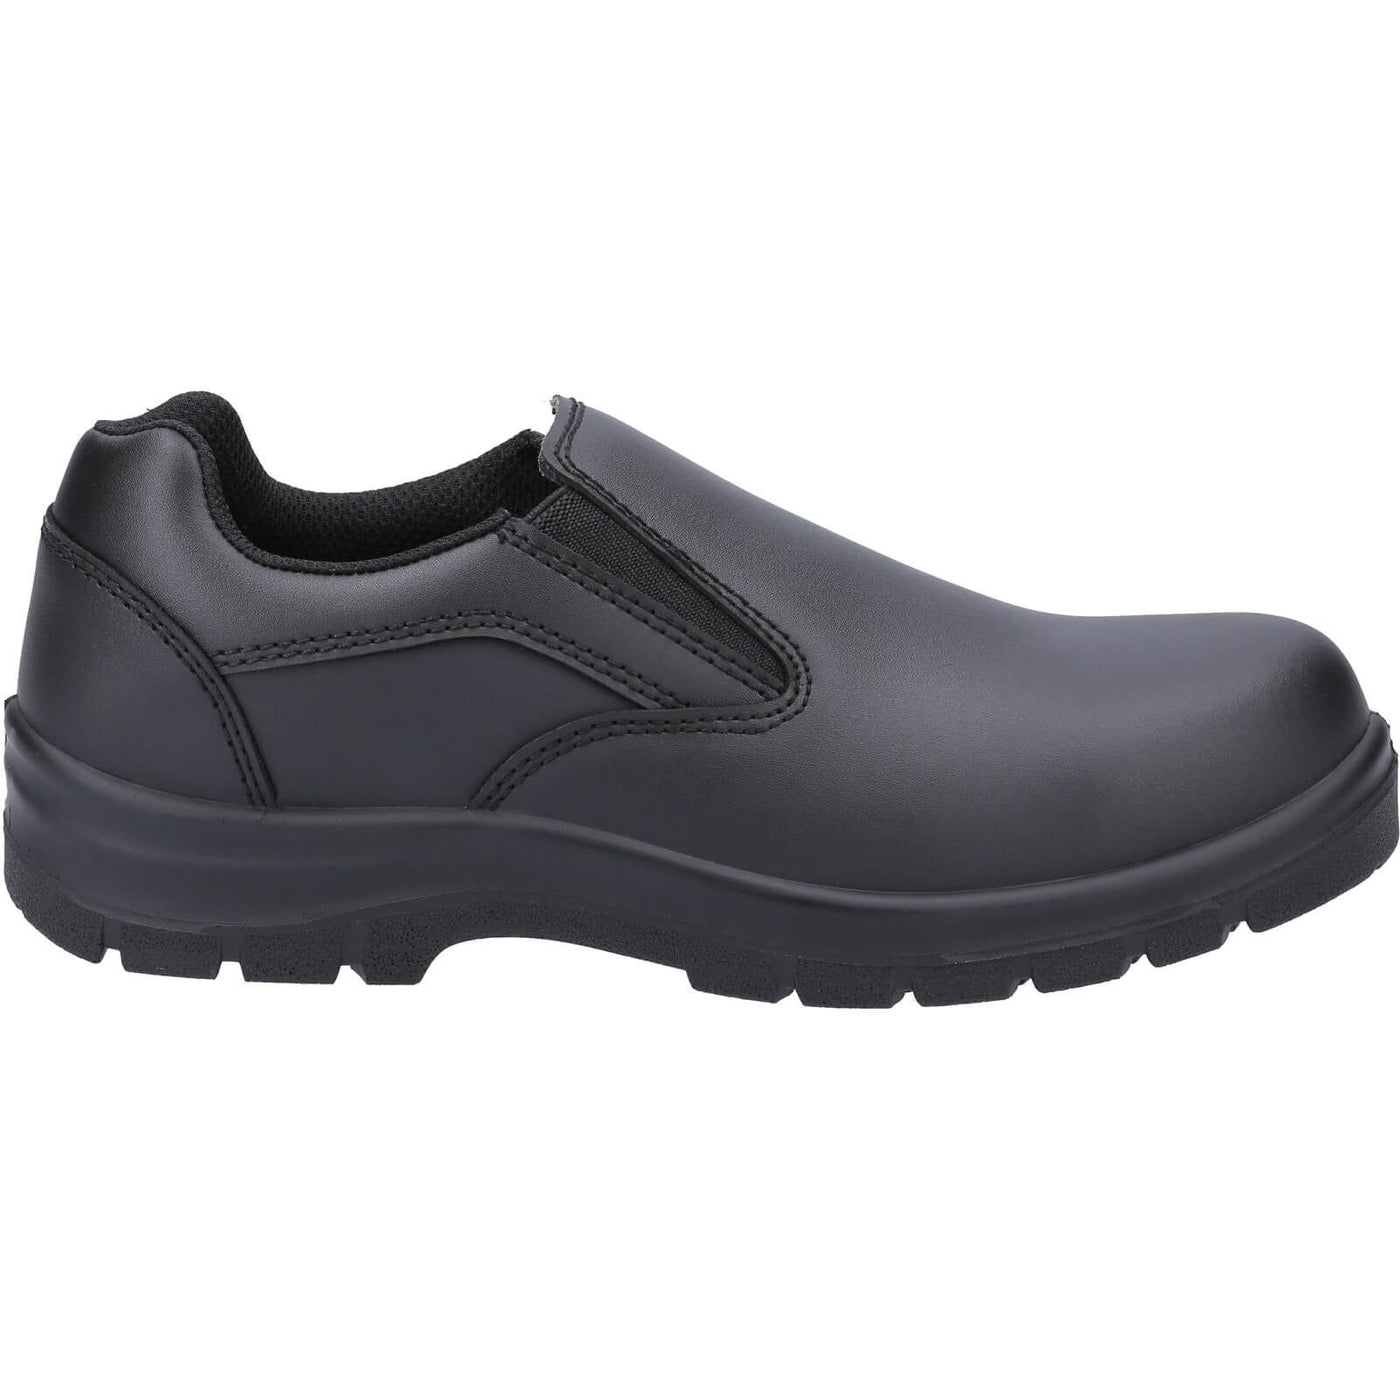 Amblers AS716C Safety Shoes Black 4#colour_black